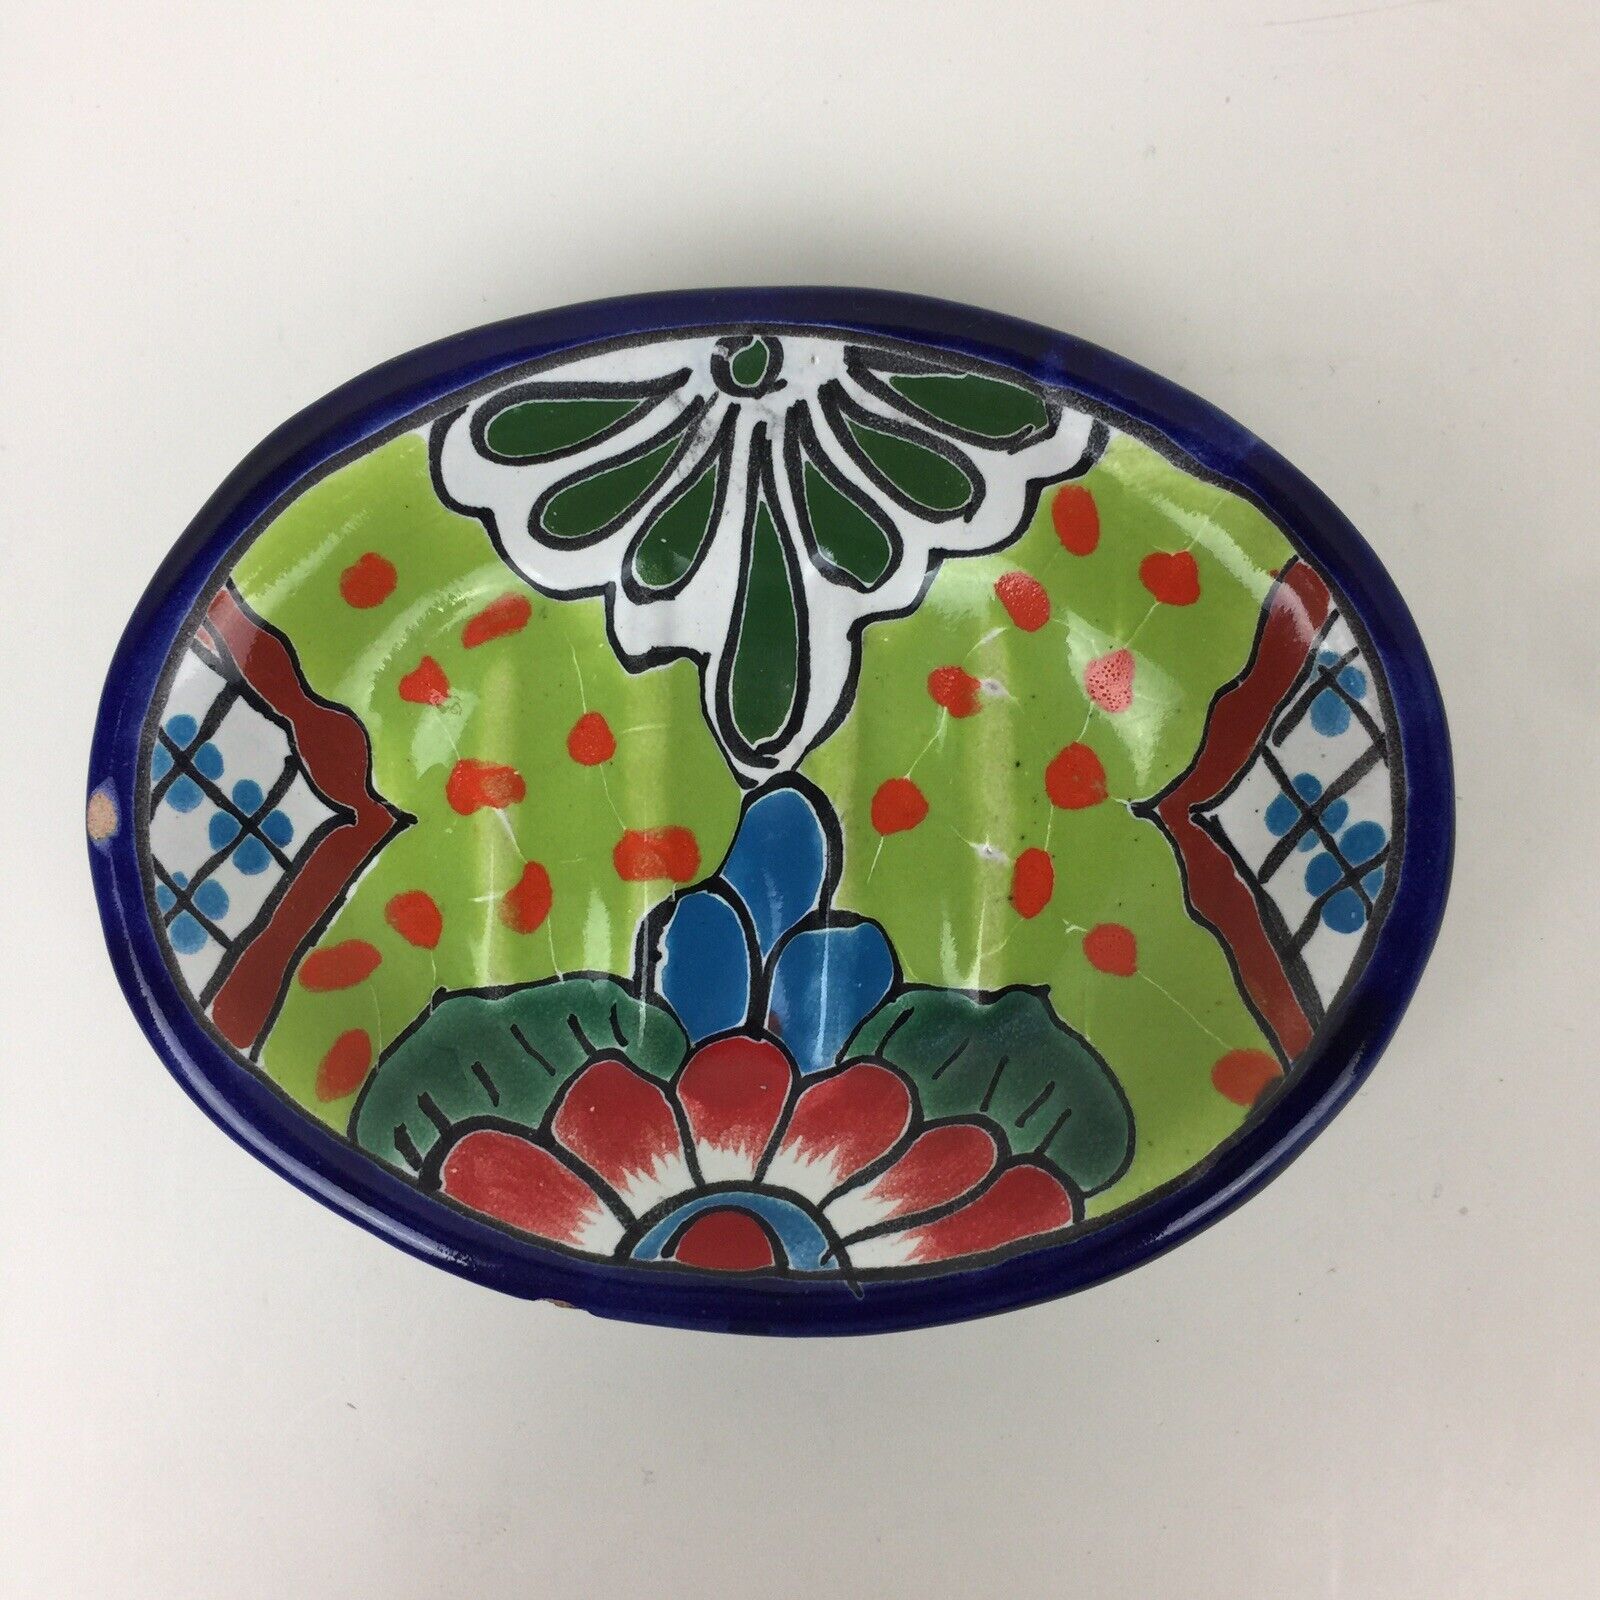 Talavera Style Ceramic Soap Dish 5.75”x 4.5” Mexican Folk Art Pottery Used